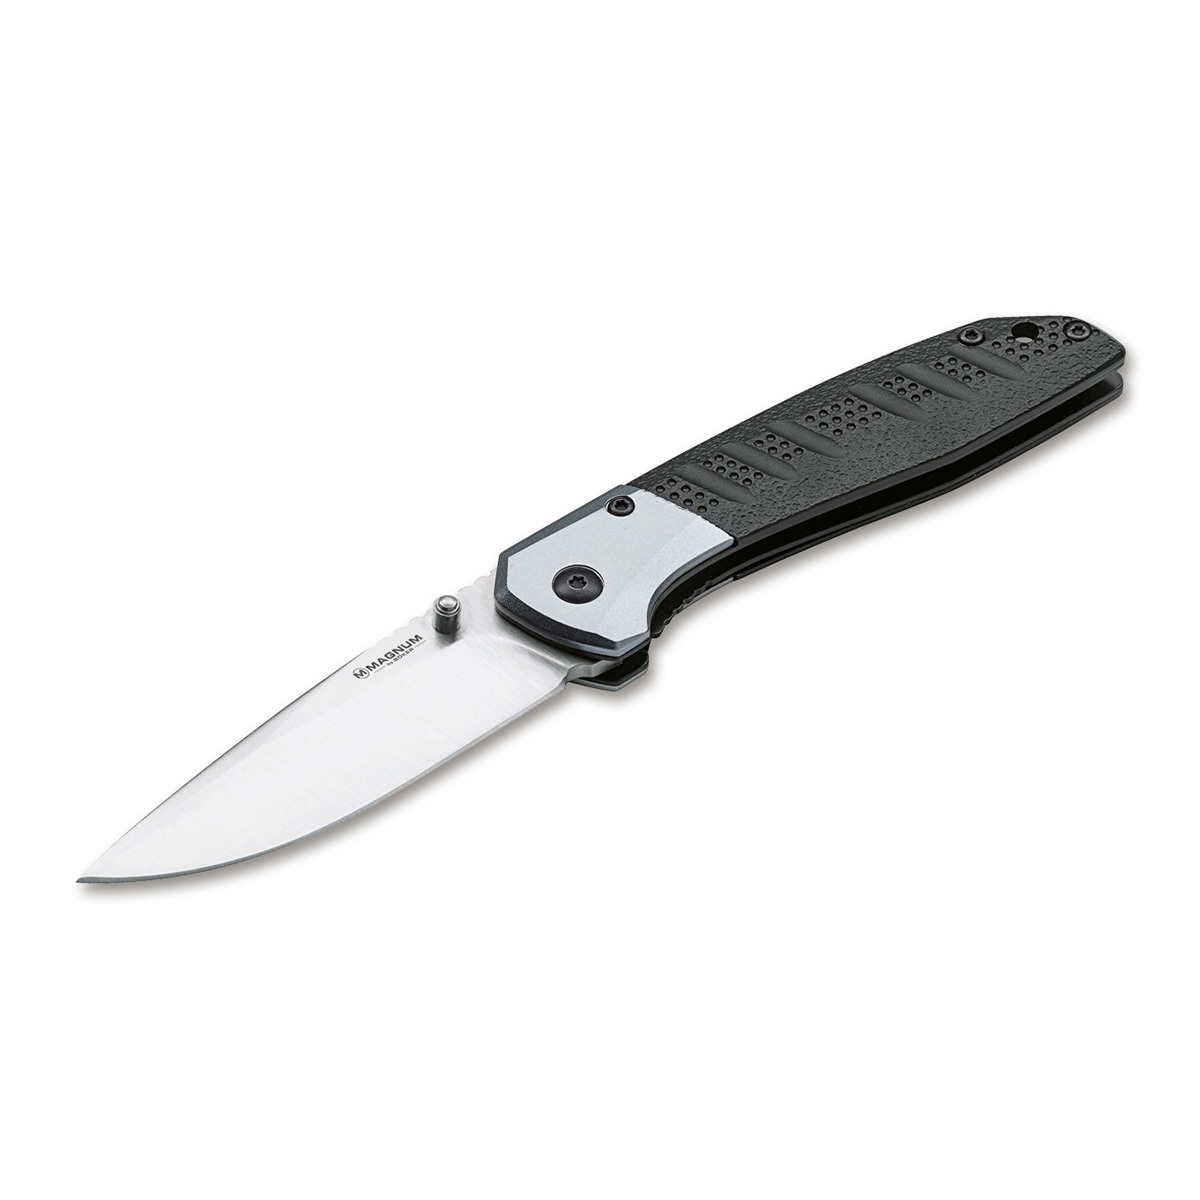 Нож складной Boker Advance pro edc, сталь 440C, рукоять алюминий